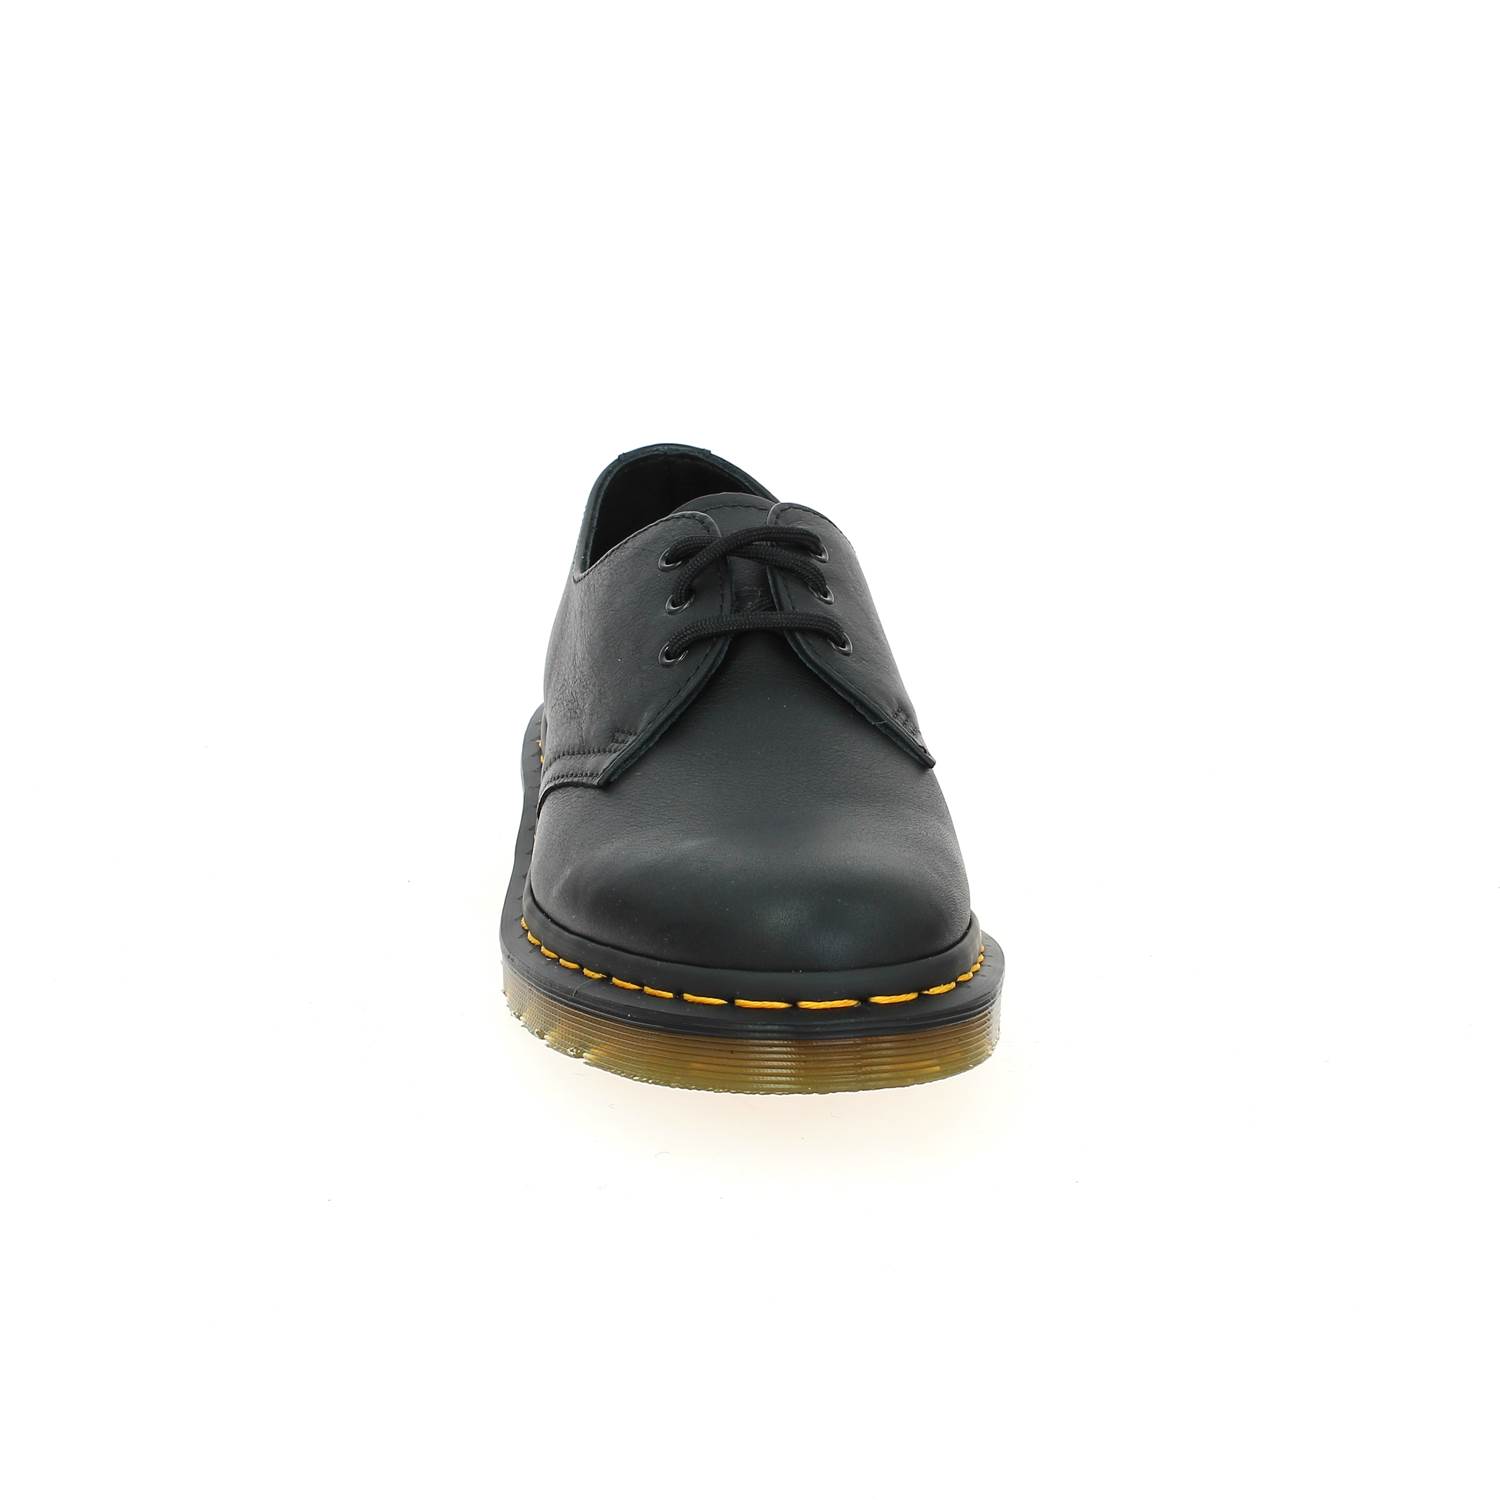 03 - DOC1461 -  - Chaussures à lacets - Cuir